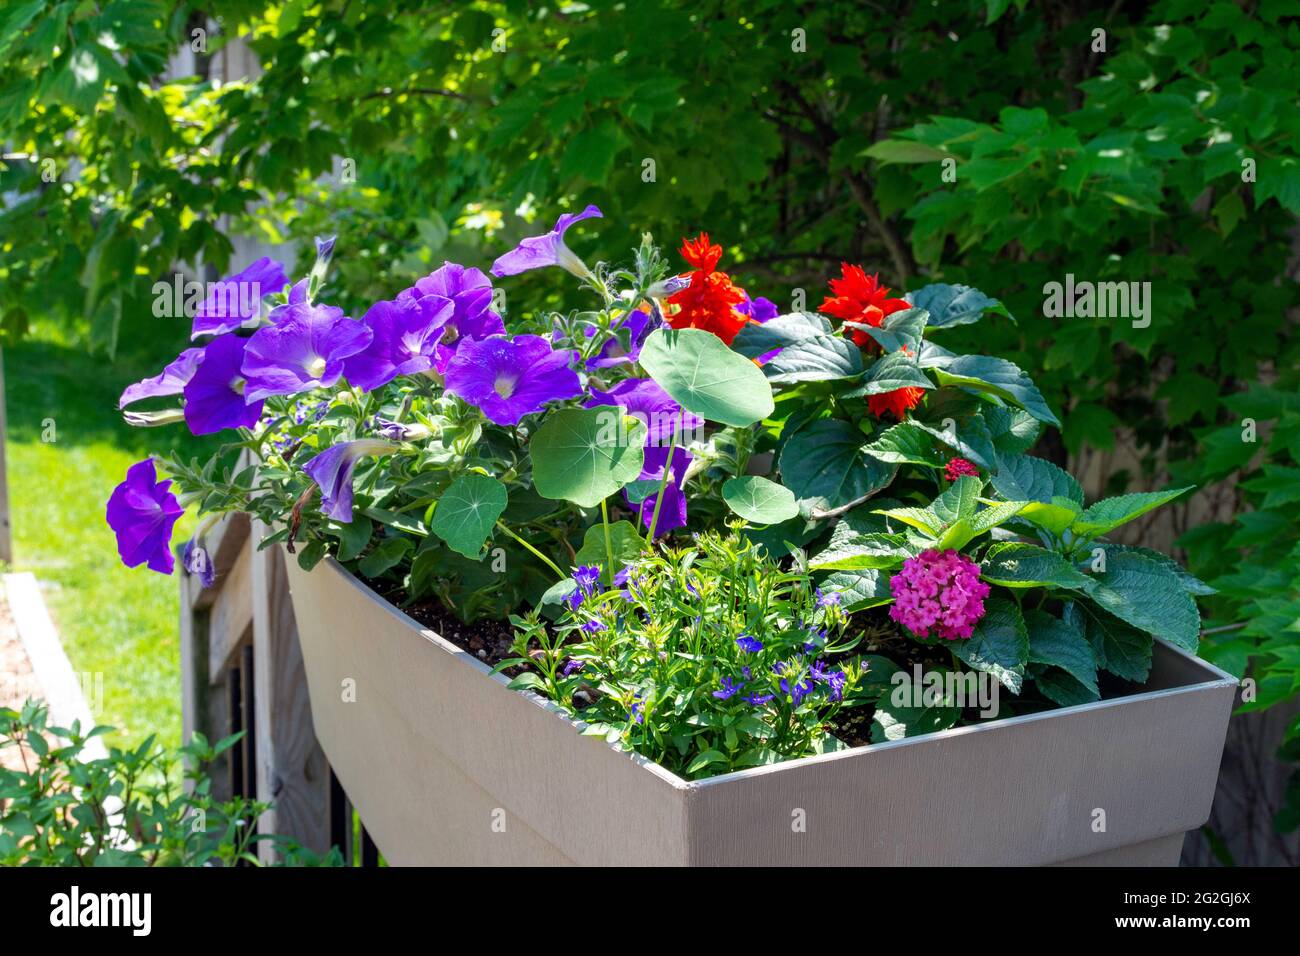 Questo giardino contiene coloratissime ringhiere piene di fiori di saliva, nasturzio, lantana e petunia per attrarre colibrì. Foto Stock